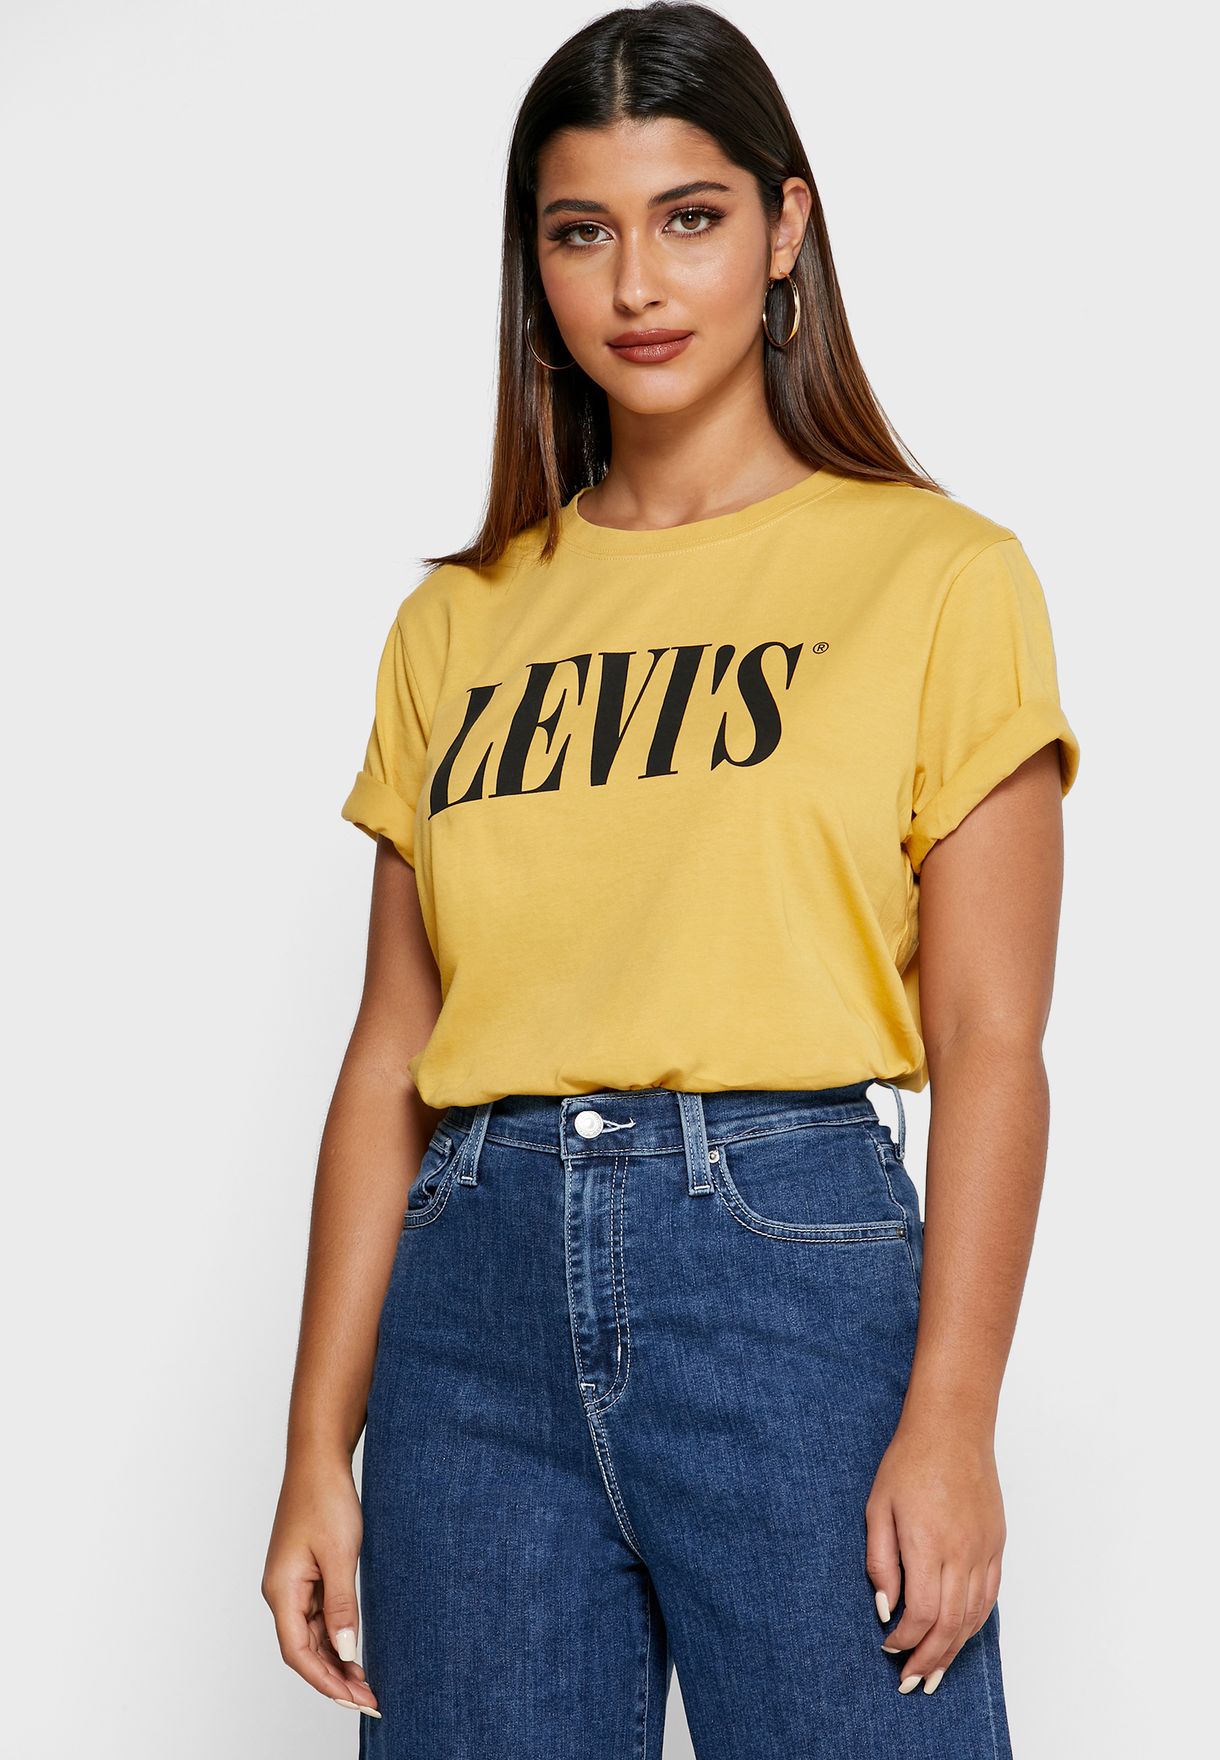 levis yellow t shirt women's